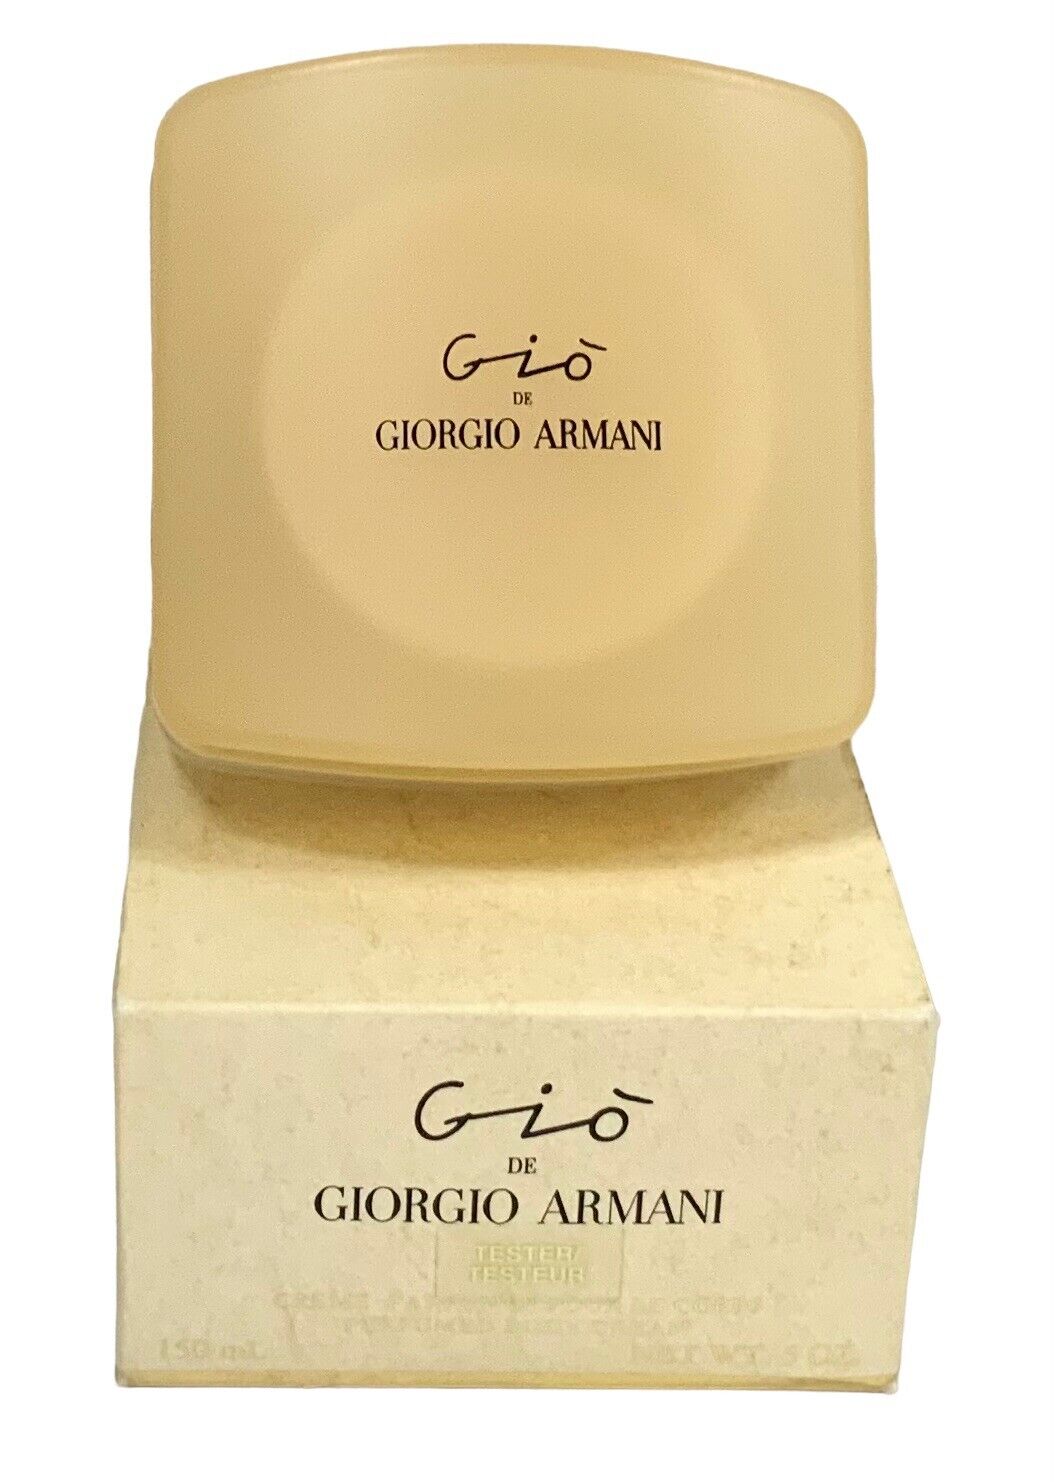 Gio De Giorgio Armani Perfumed body Lotion 5 Fl Oz - 150 Ml Rare